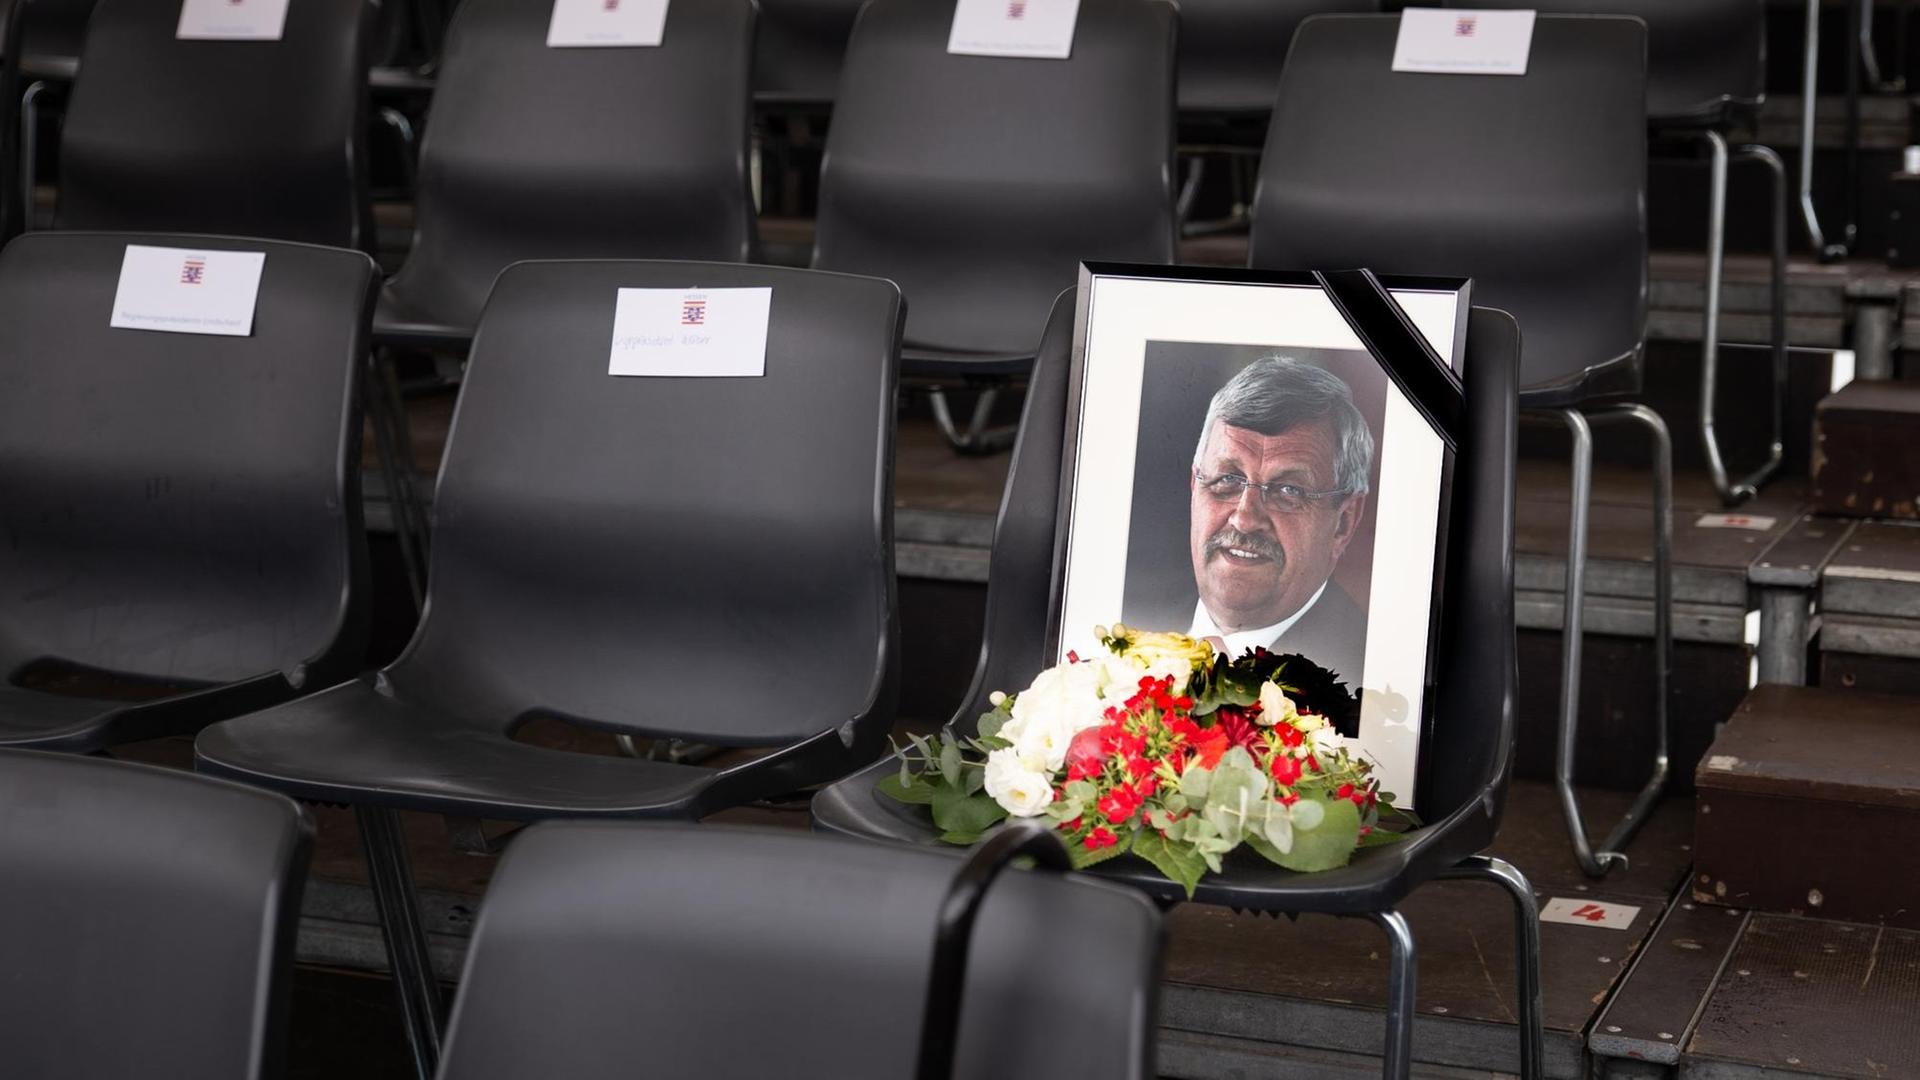 Der Stuhl auf der Ehrentribühne, der für den erschossenen Kasseler Regierungspäsidenten Walter Lübcke reserviert war, ist am Tag des Festumzugs mit einem Foto und einem Blumenstrauß geschmückt. Der Festumzug markiert auch in diesem Jahr wieder das Ende des Hessentages.